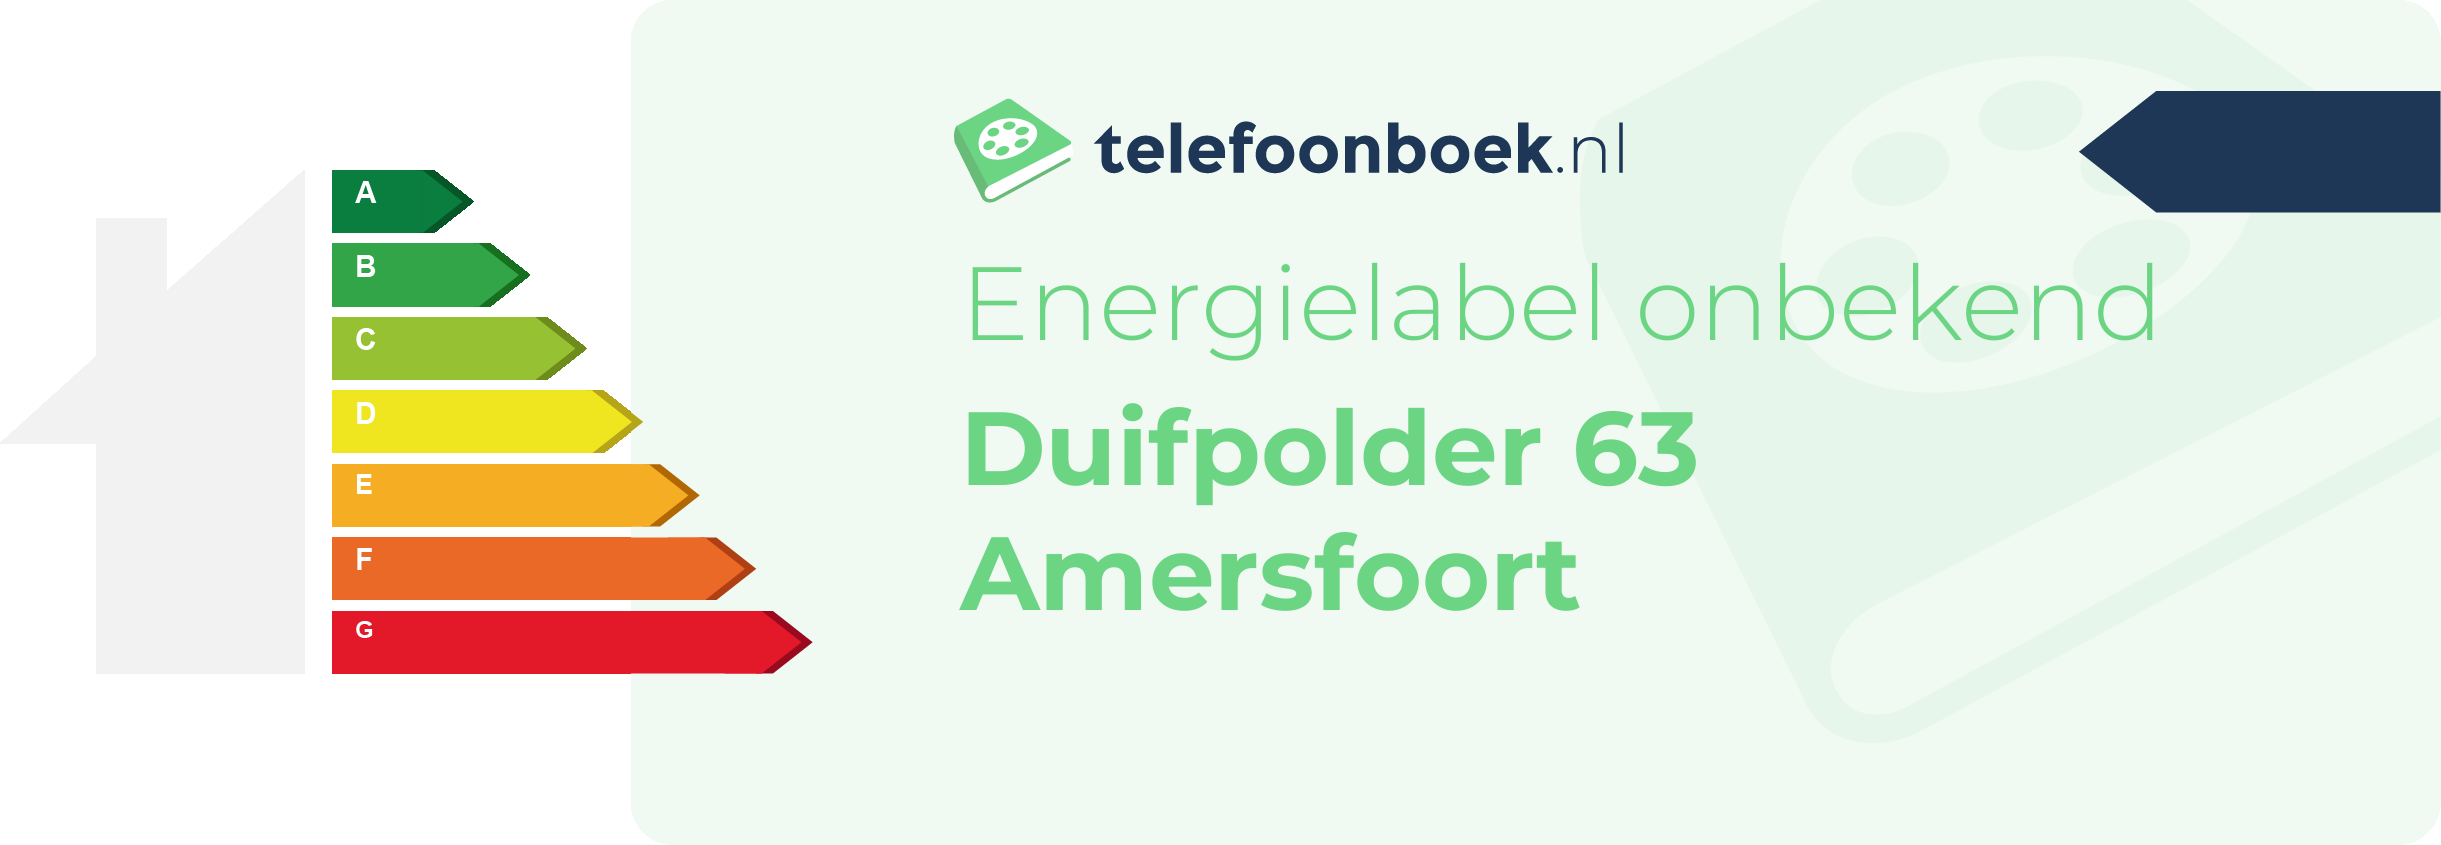 Energielabel Duifpolder 63 Amersfoort